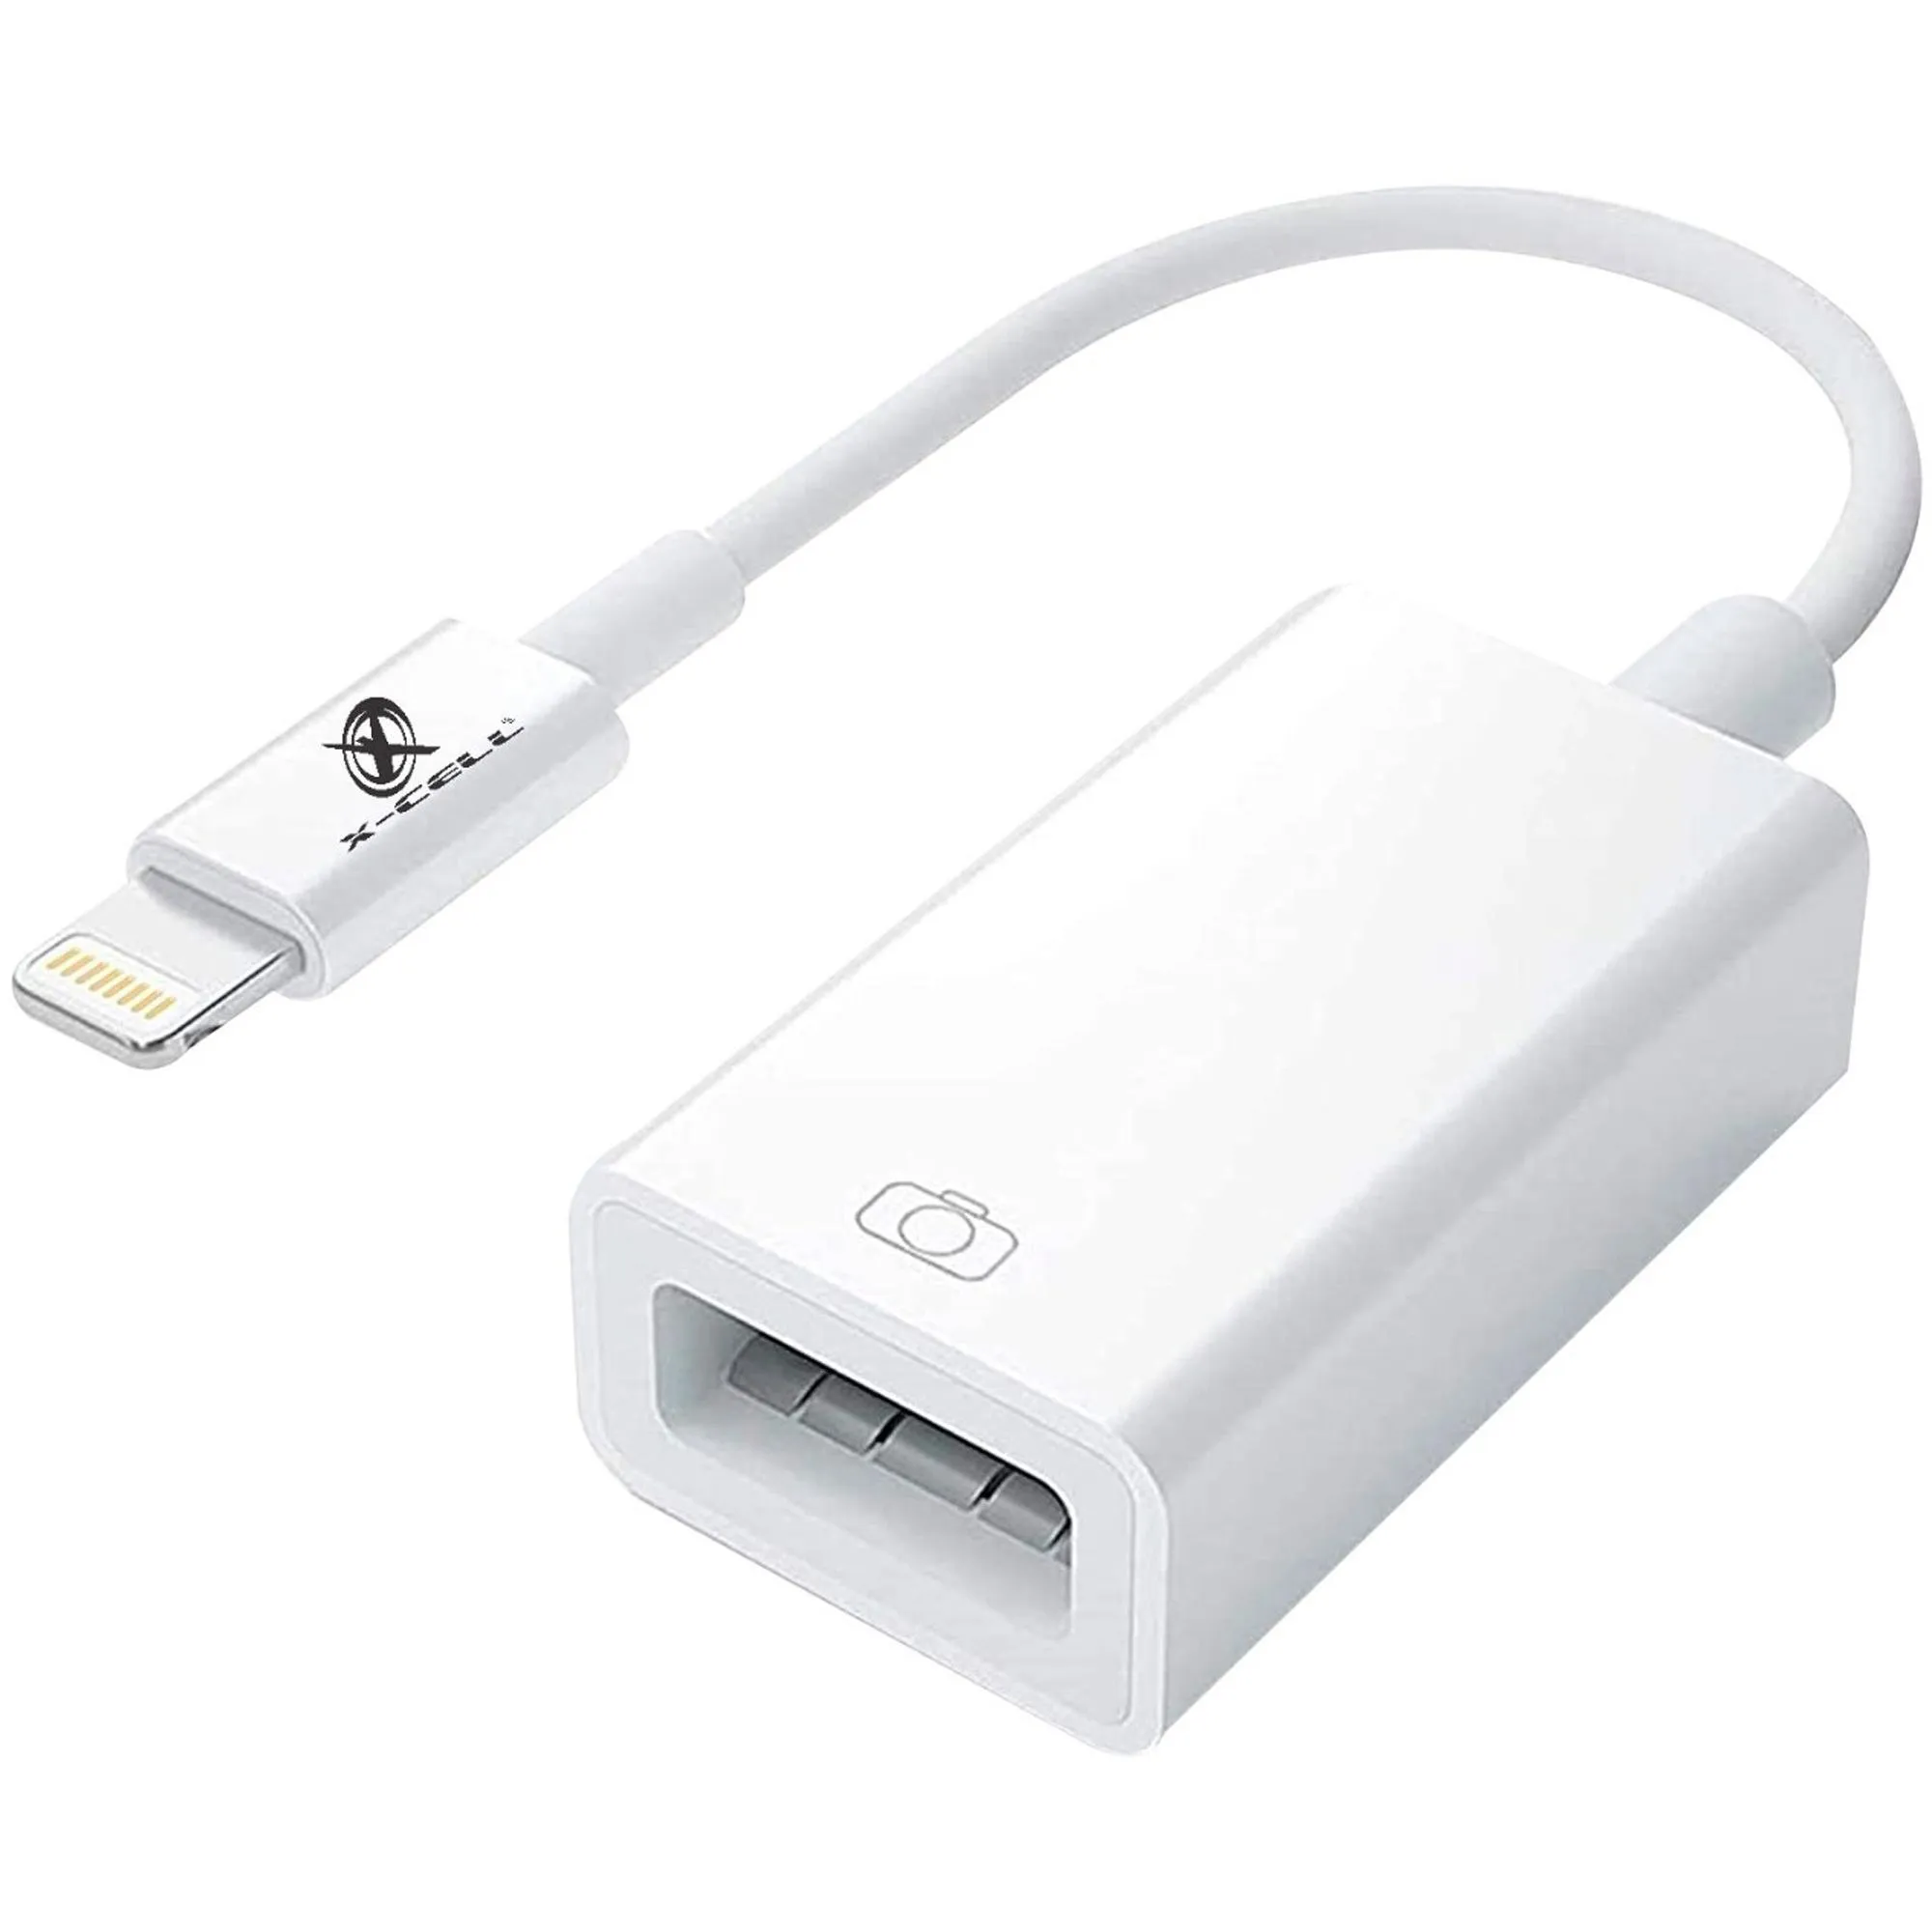 Cabo Adaptador OTG USB Light 8P Branco por 37,99 à vista no boleto/pix ou parcele em até 1x sem juros. Compre na loja Mundomax!